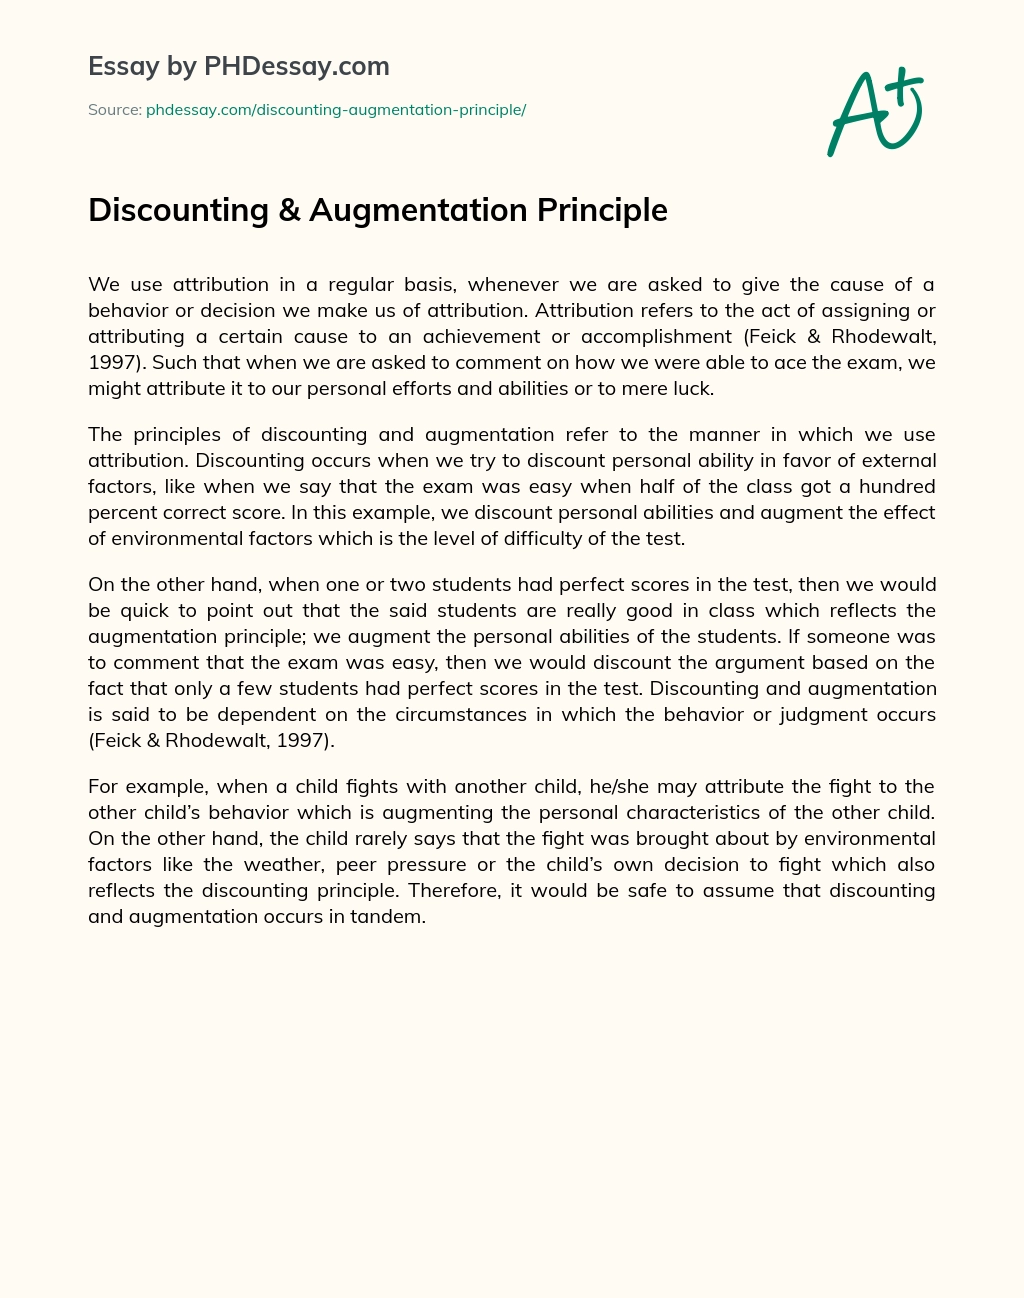 Discounting & Augmentation Principle essay